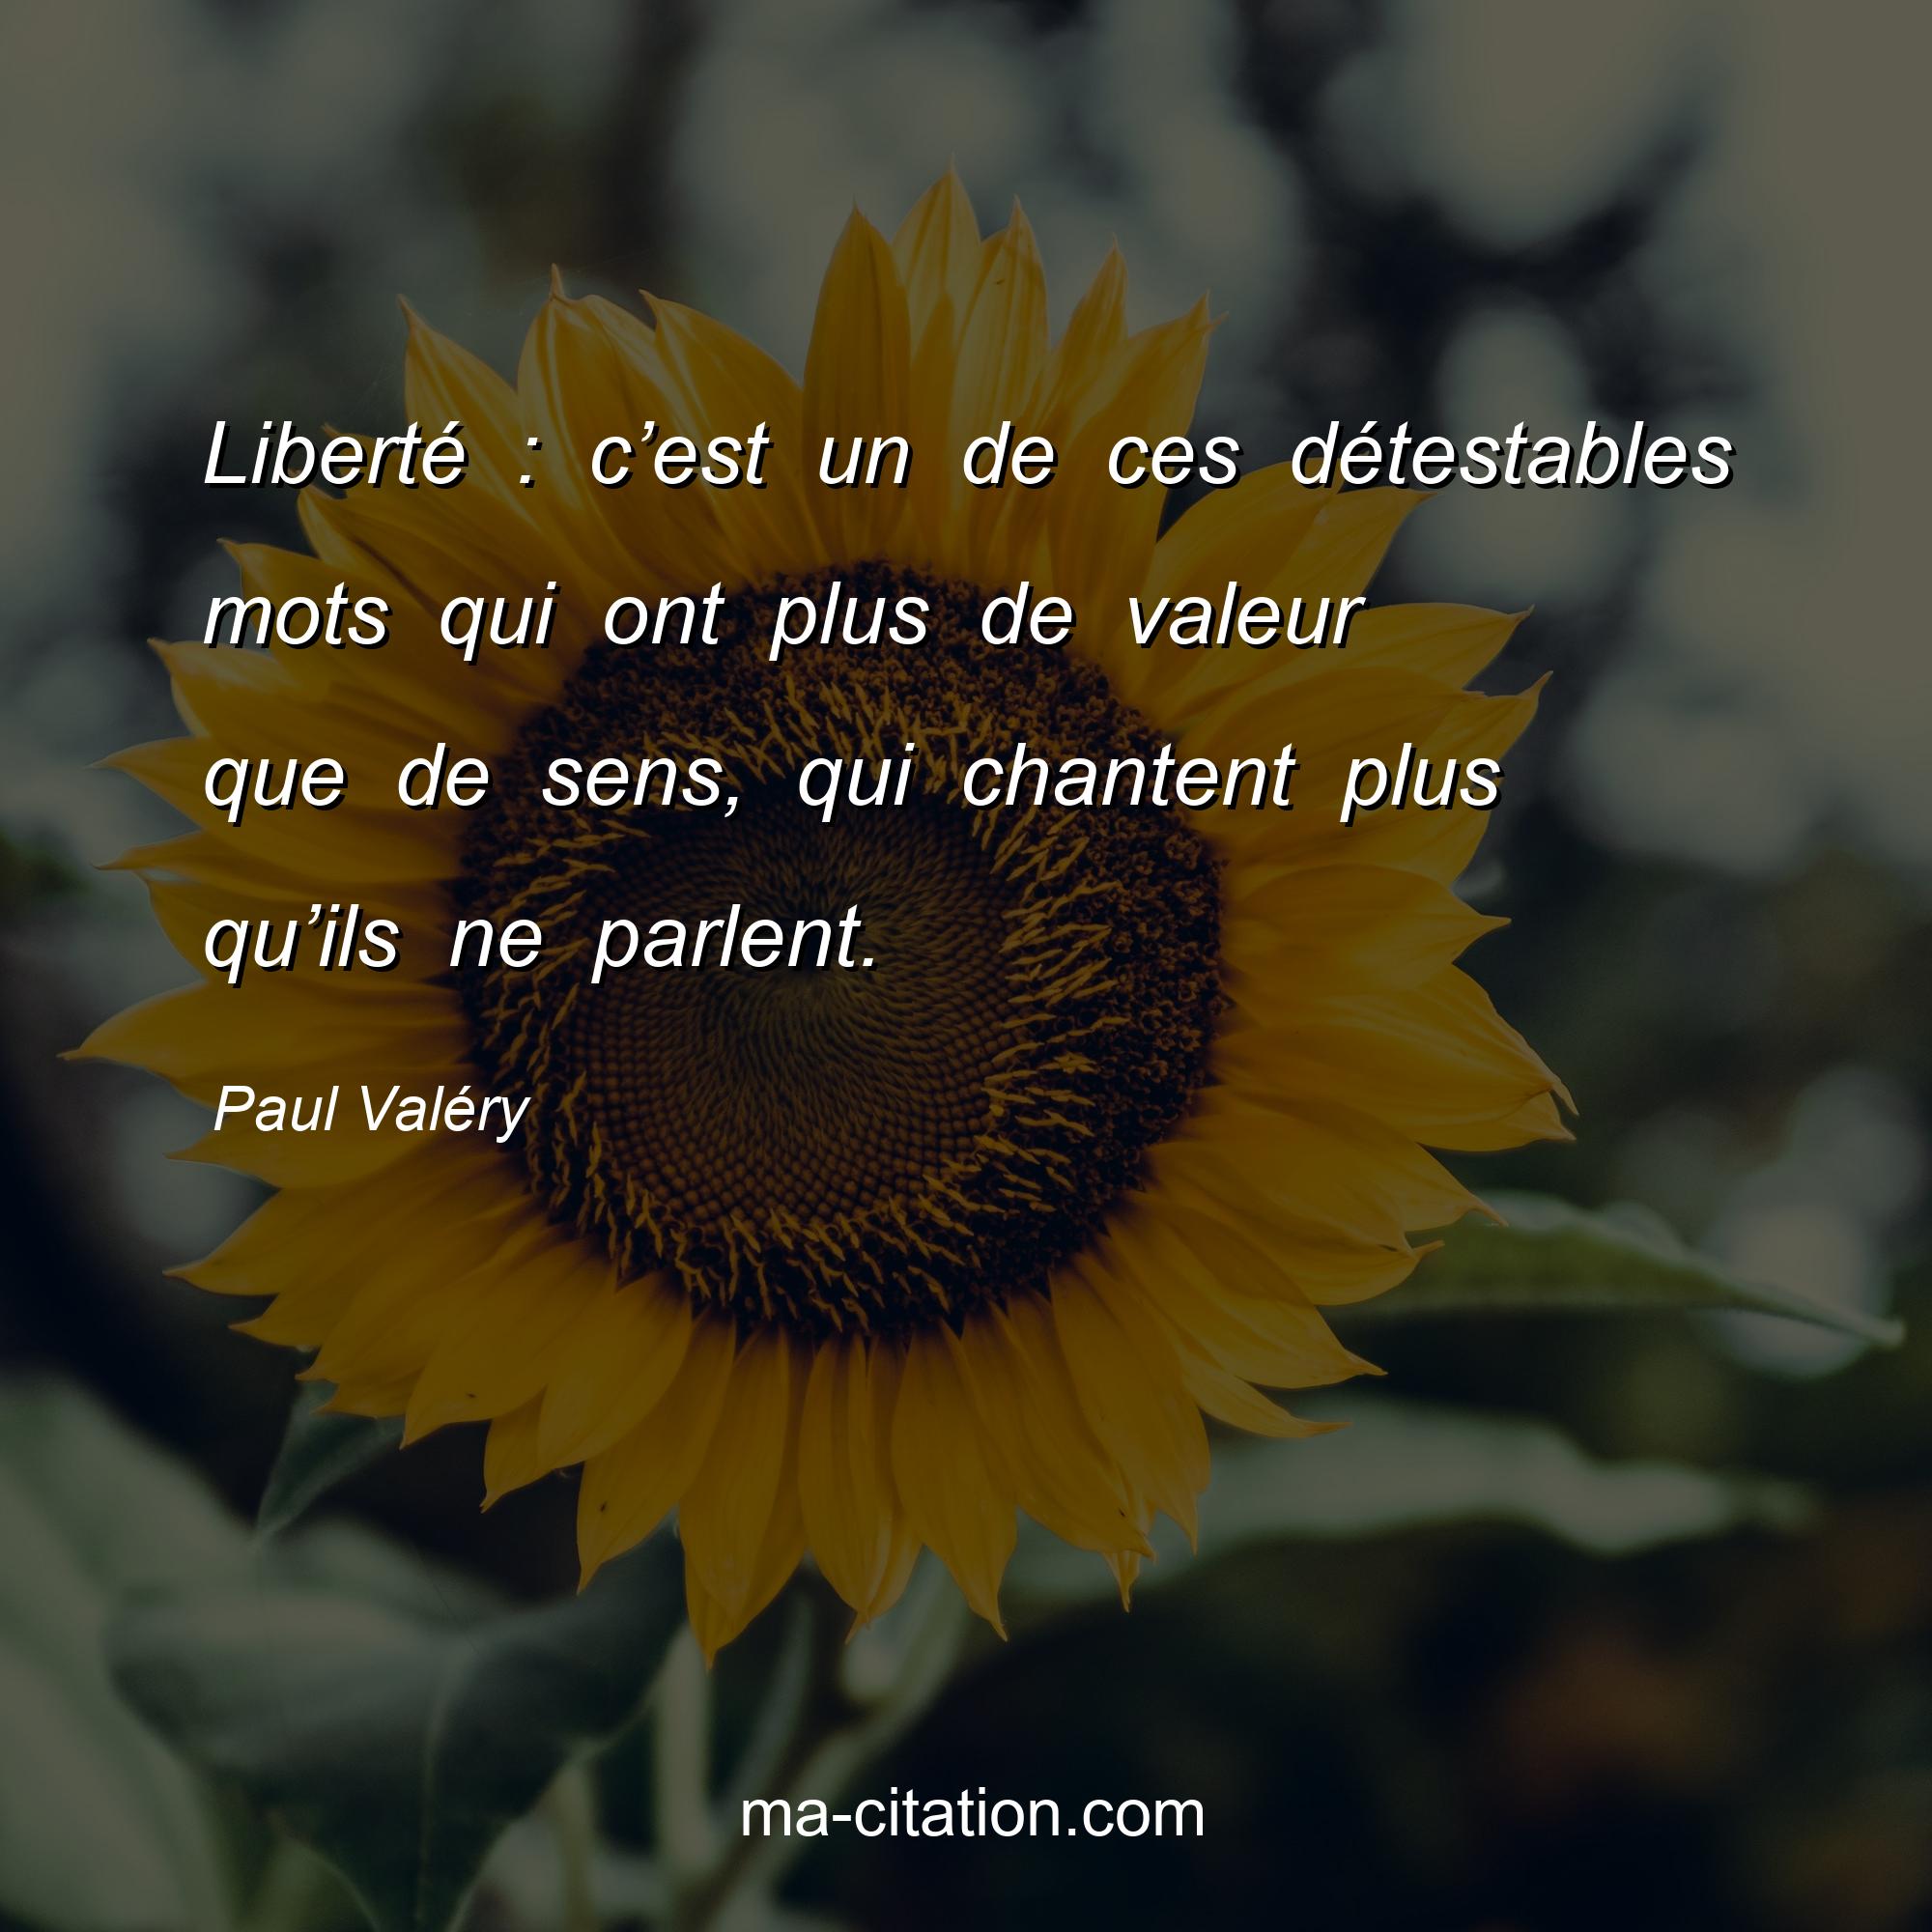 Paul Valéry : Liberté : c’est un de ces détestables mots qui ont plus de valeur que de sens, qui chantent plus qu’ils ne parlent.